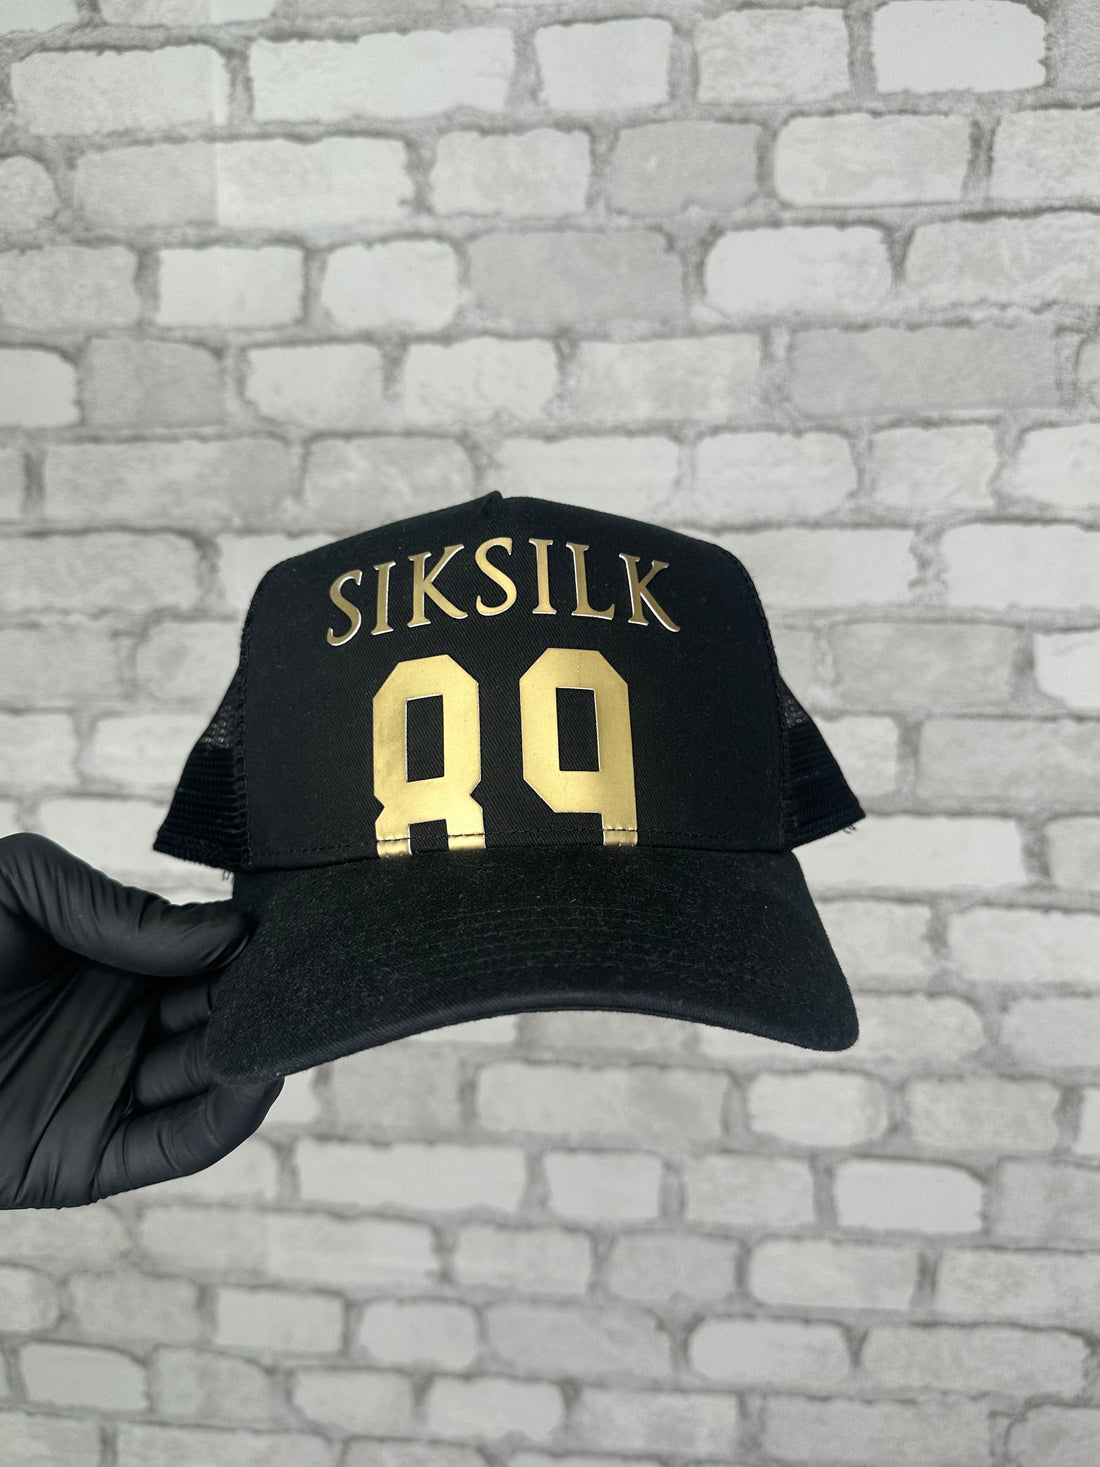 Siksilk - Black 89 Foam Mesh Trucker Cap